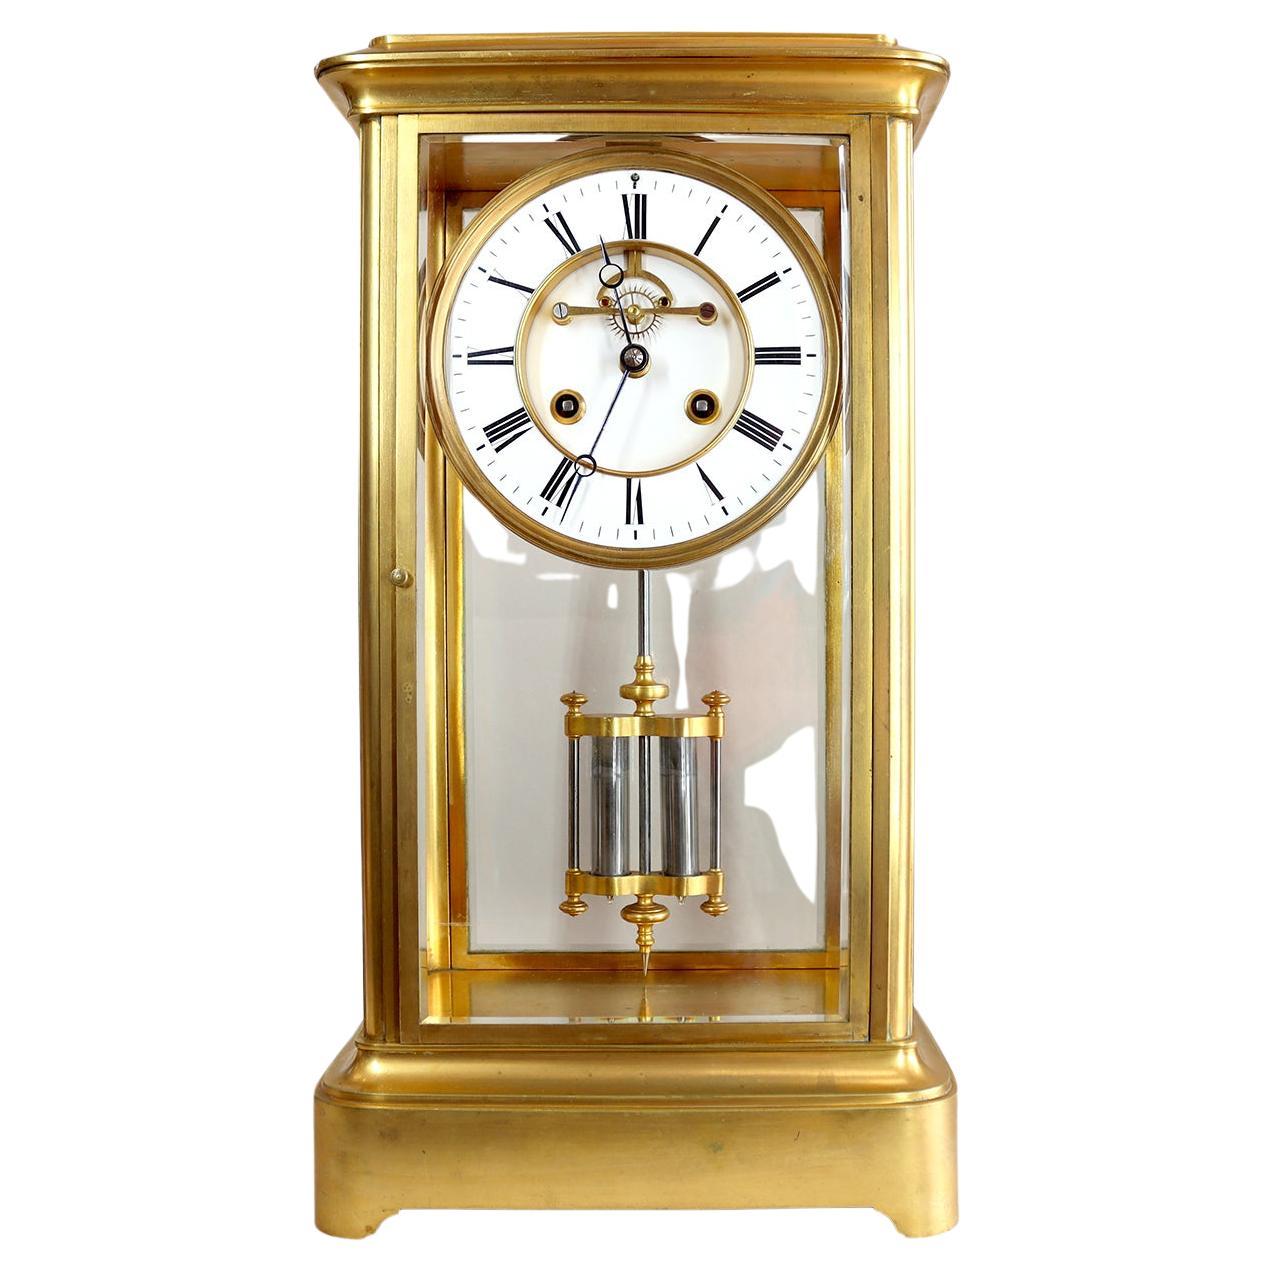 How do I adjust a French mantel clock?